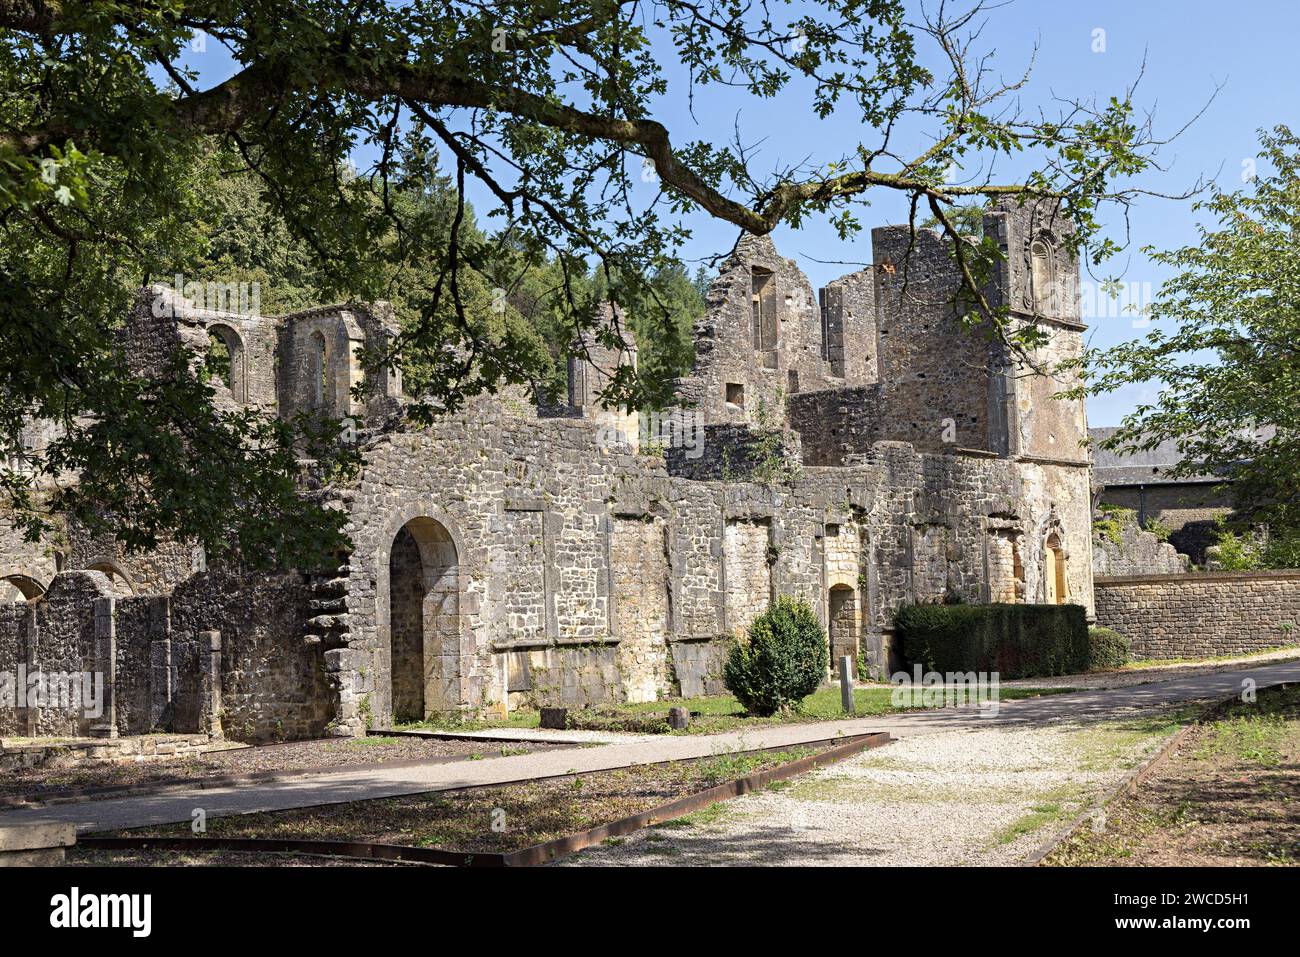 Ruinierte Abtei in Orval, Belgien Stockfoto